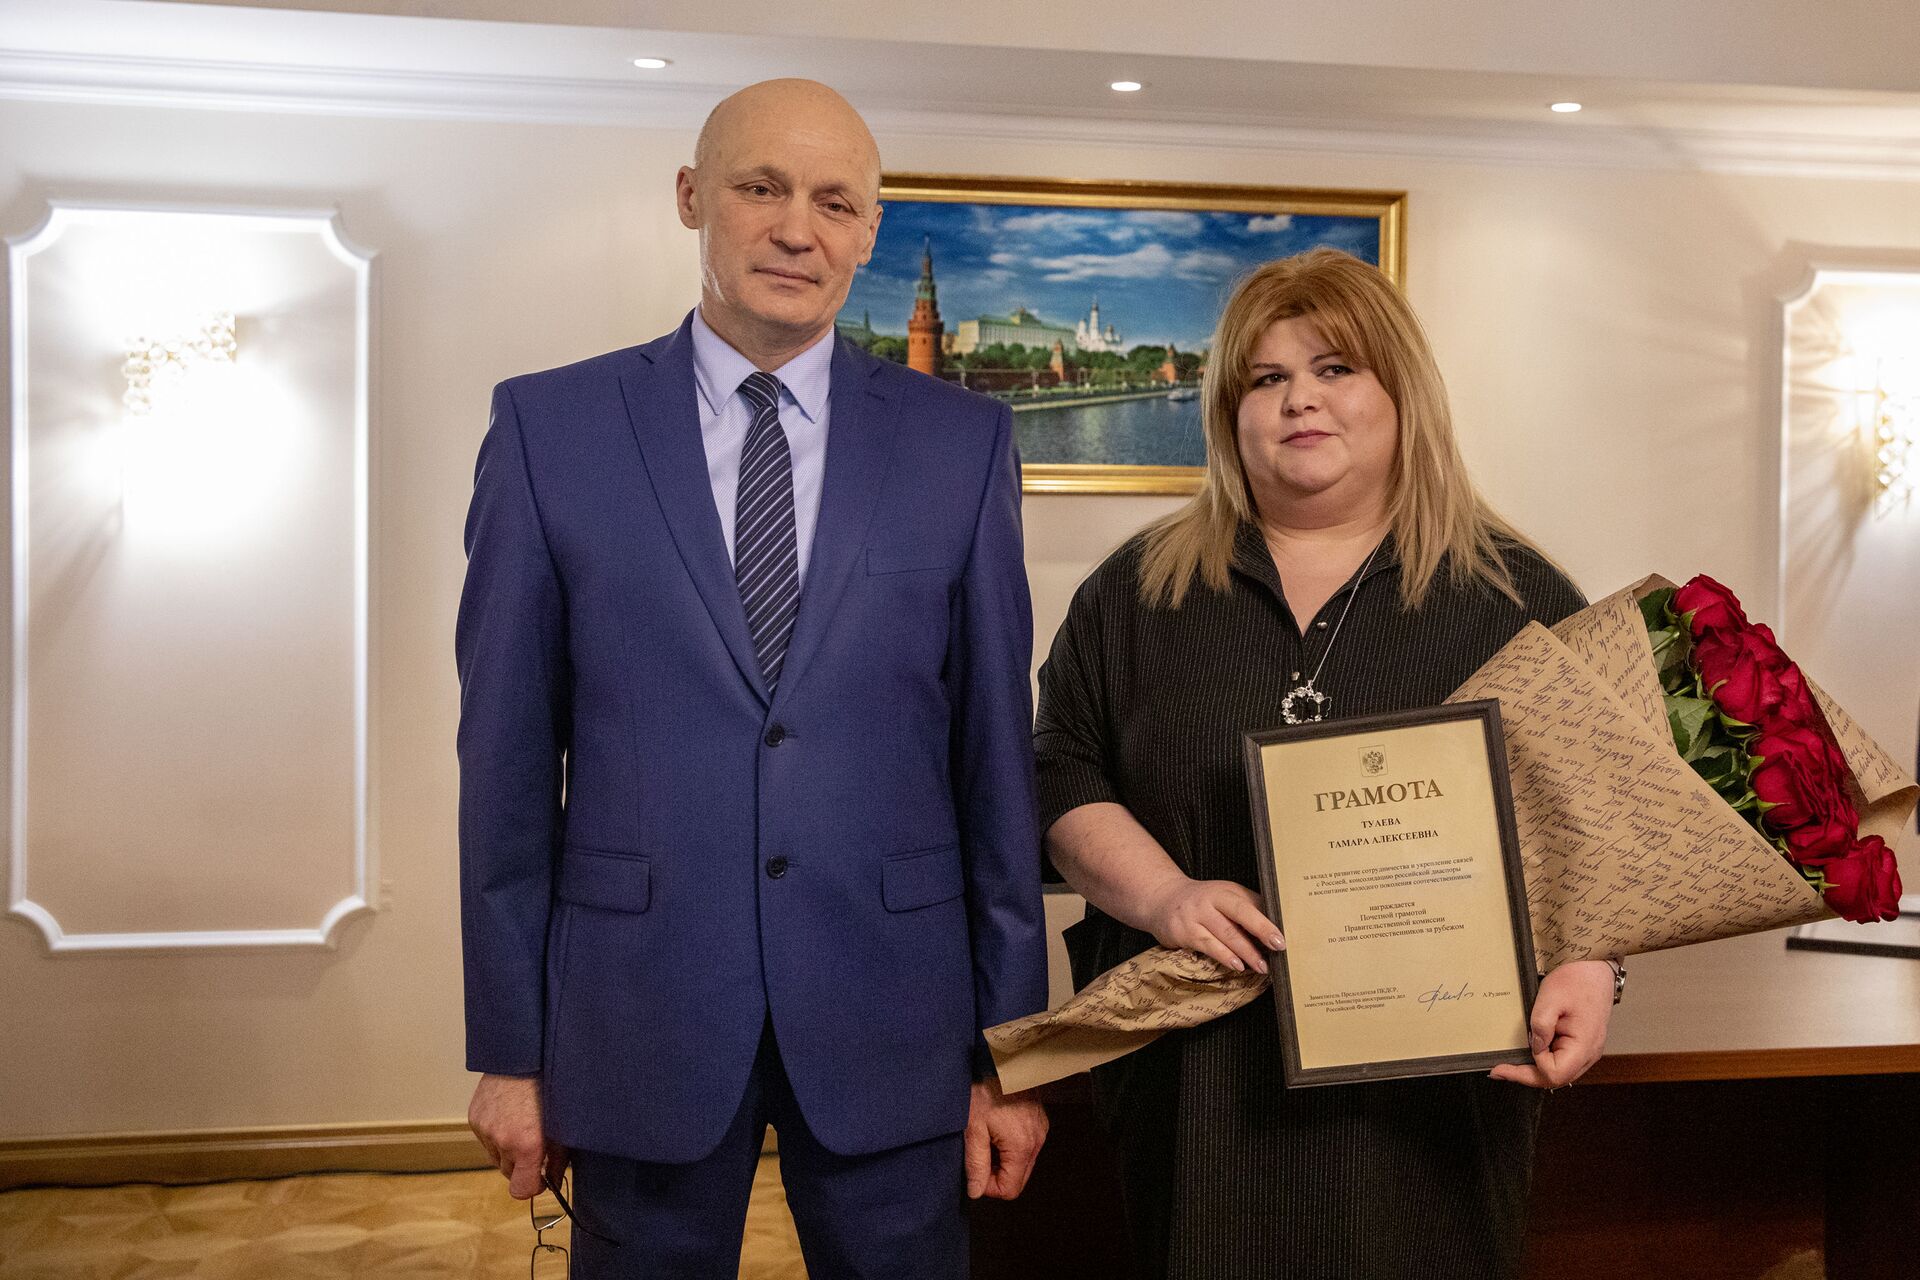 Жителей Цхинвала наградили в посольстве РФ за вклад в укрепление связей между странами - Sputnik Южная Осетия, 1920, 08.04.2021